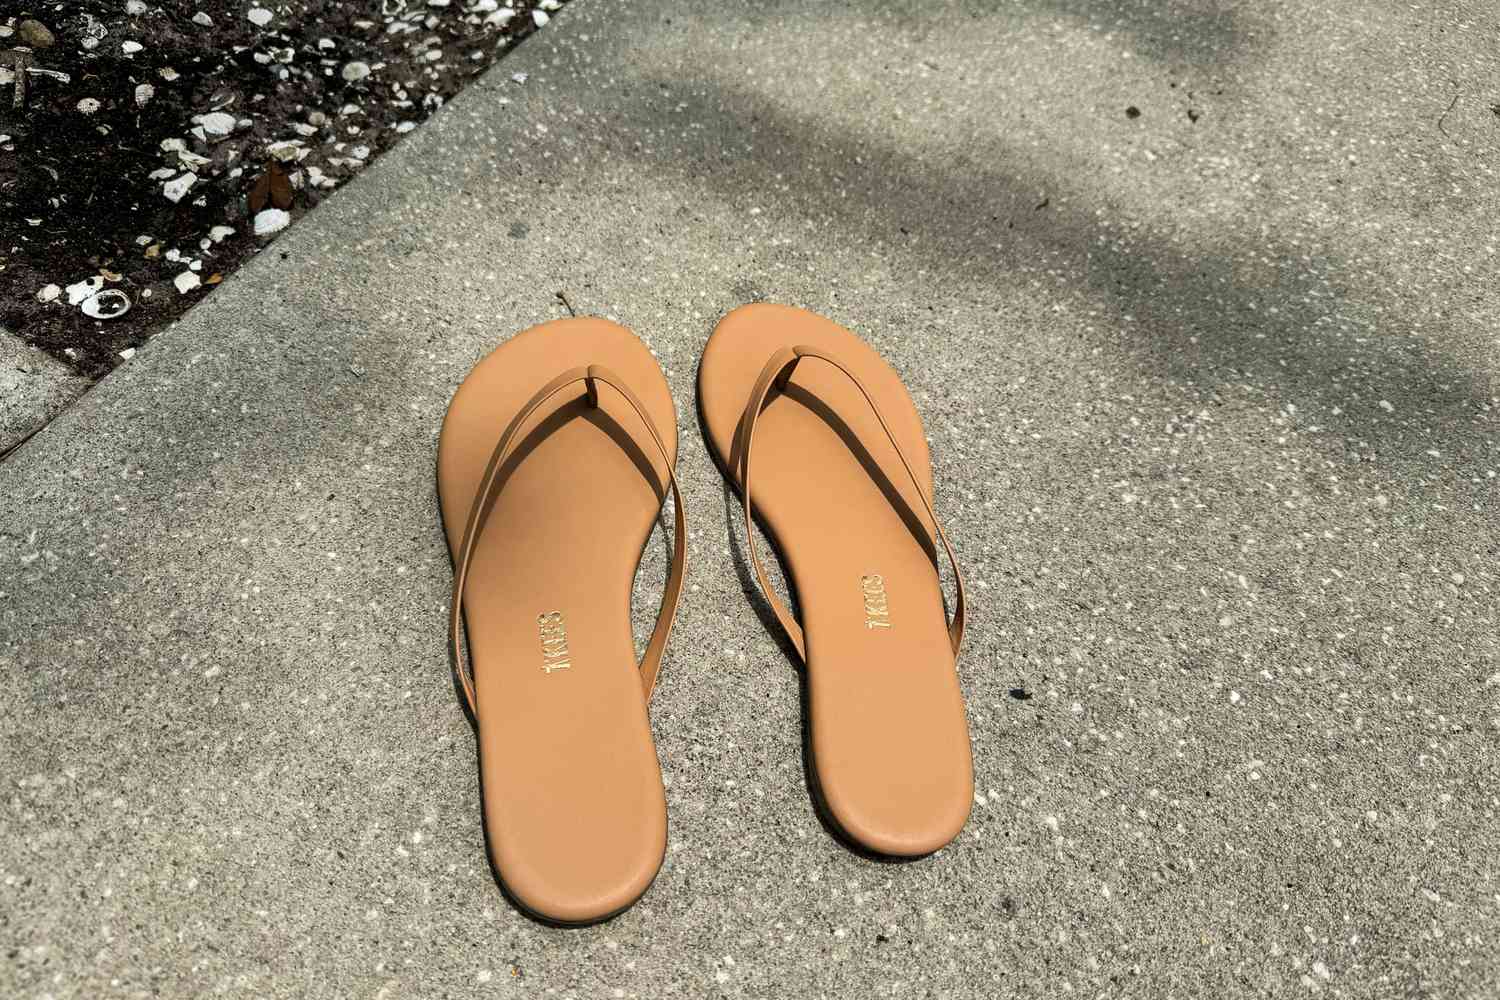 Tkees Flip-Flop Sandals on concrete 